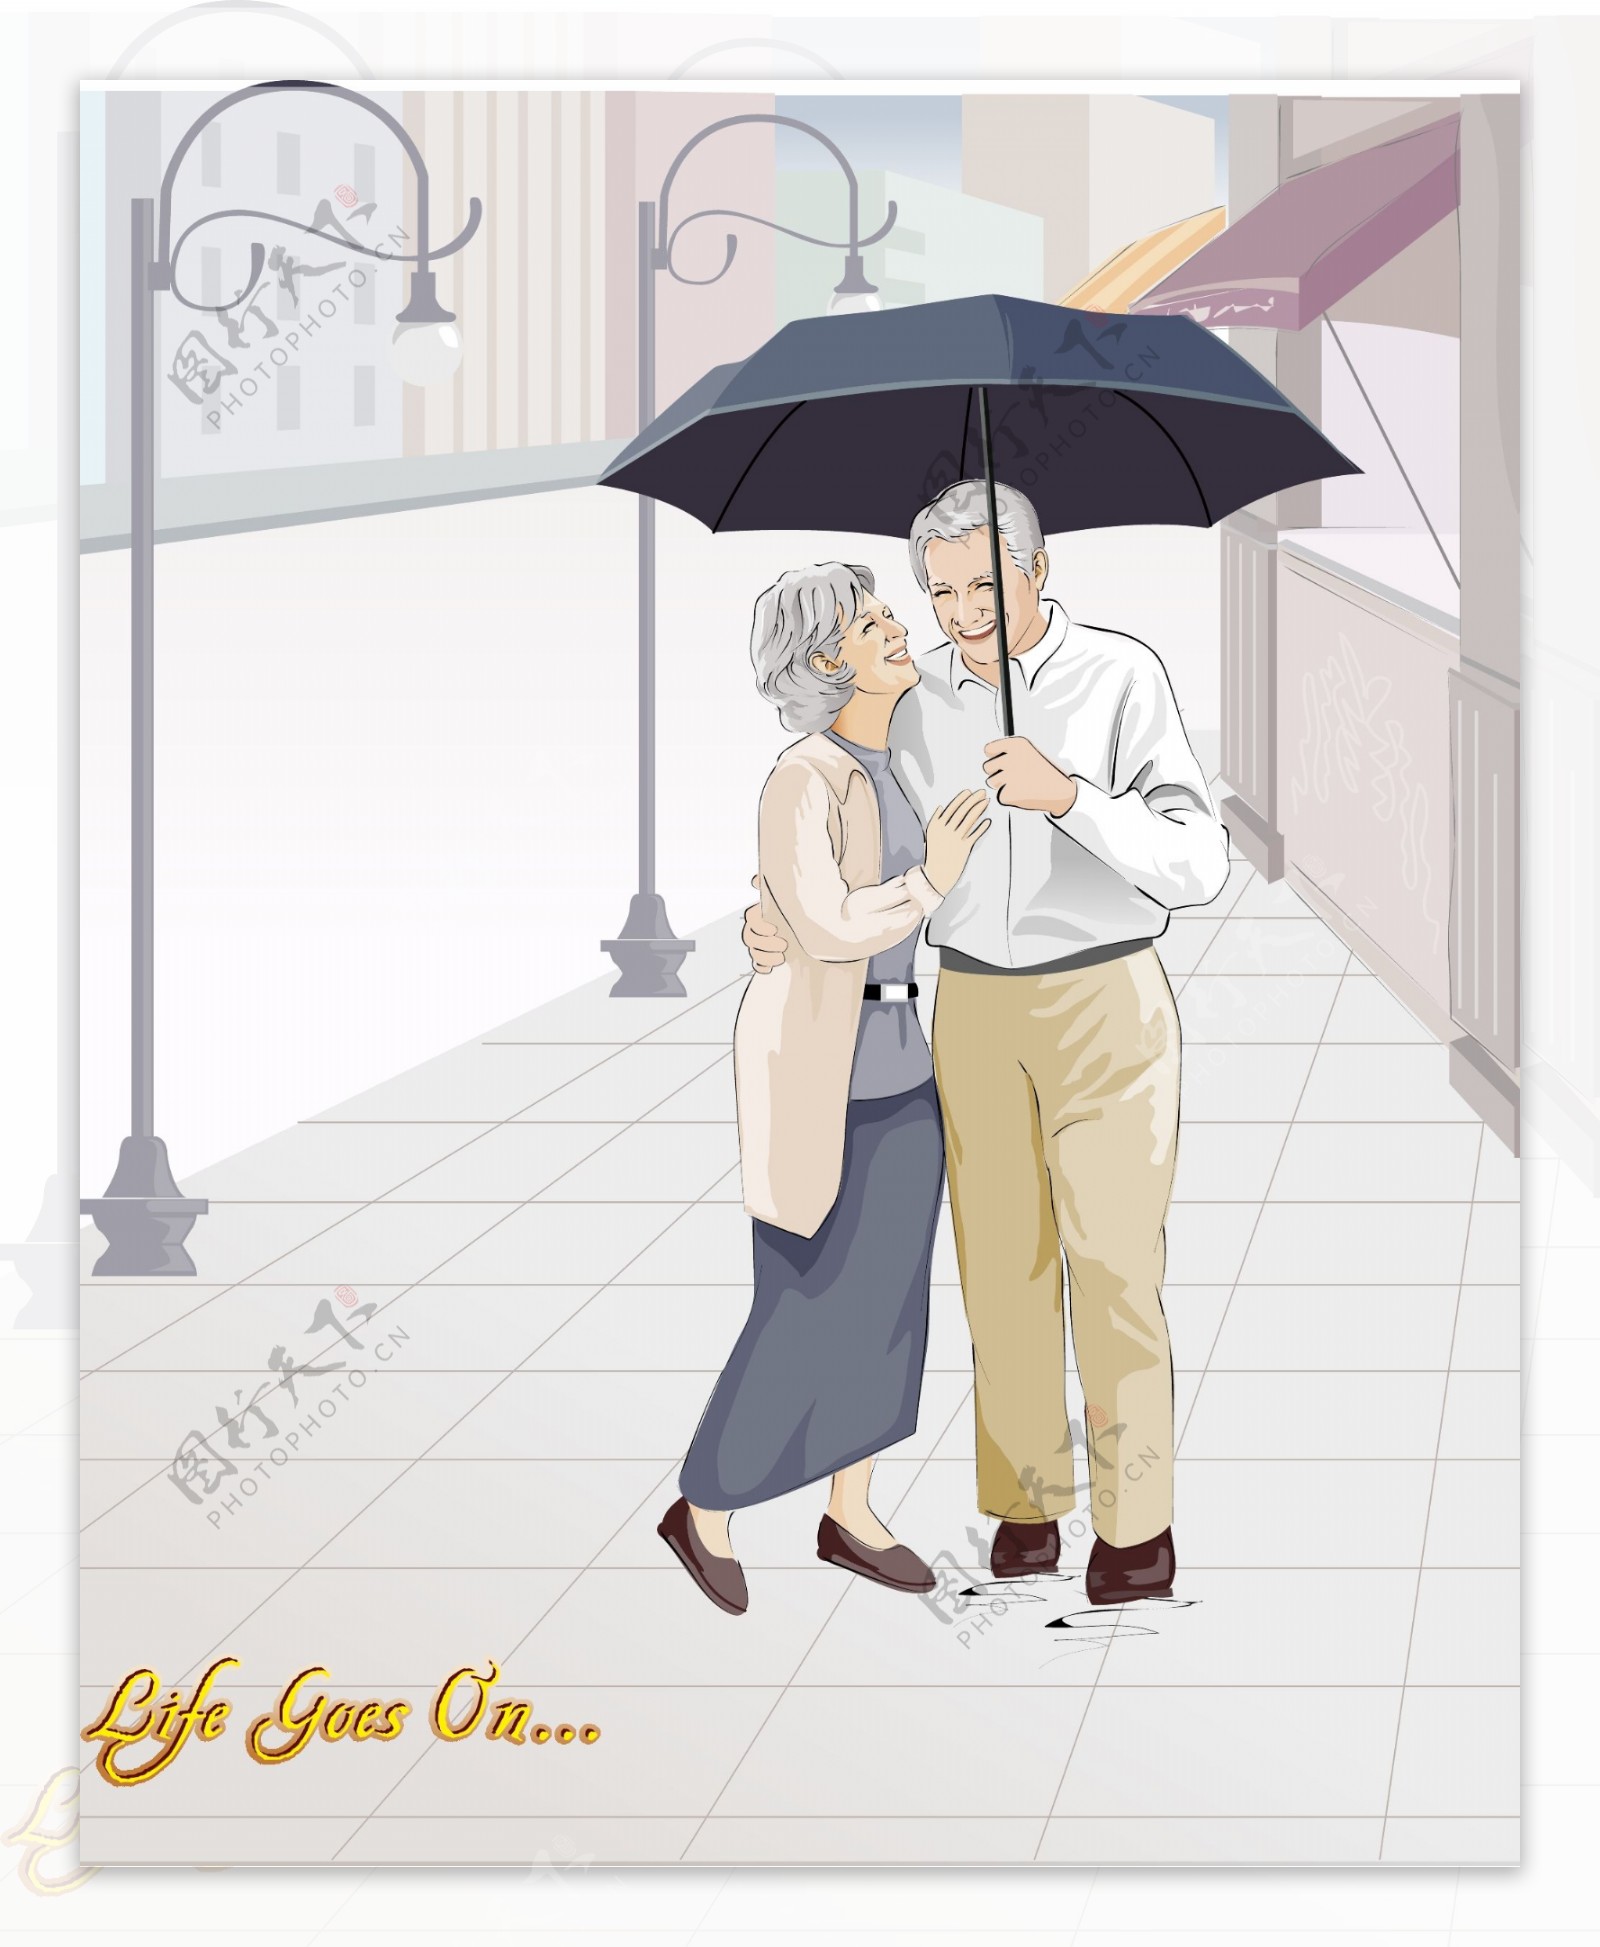 雨中浪漫的老夫妻